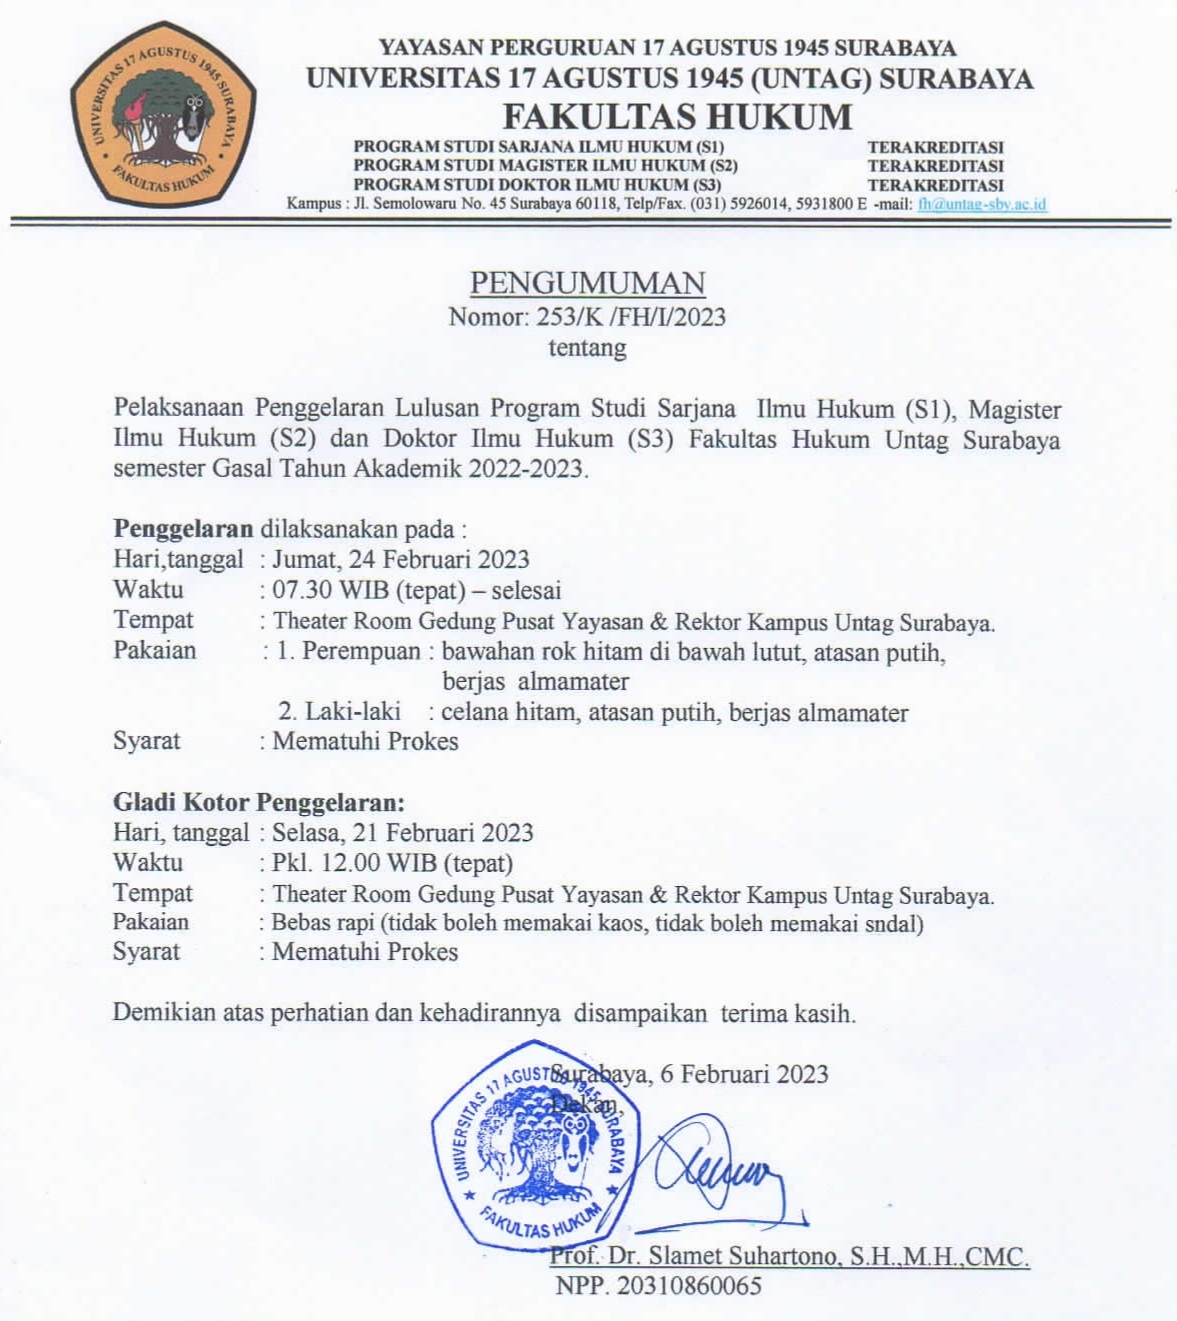 Pelaksanaan Penggelaran Yudisium Lulusan S1, S2, S3 Fakultas Hukum UNTAG Surabaya Semester Gasal 202